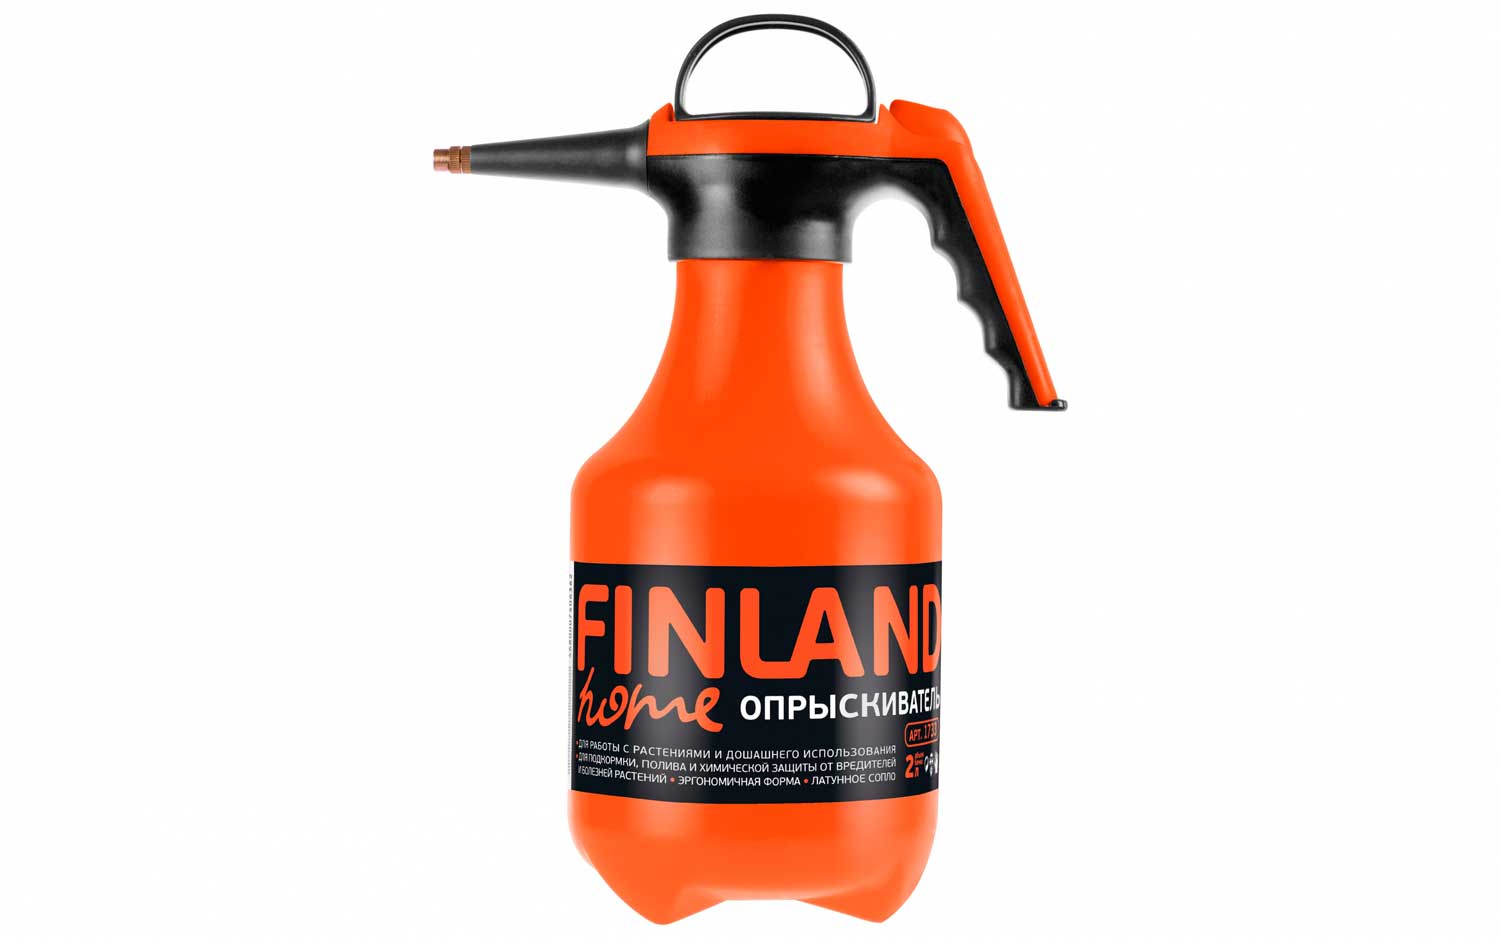 Опрыскиватель 2л Finland (оранж)